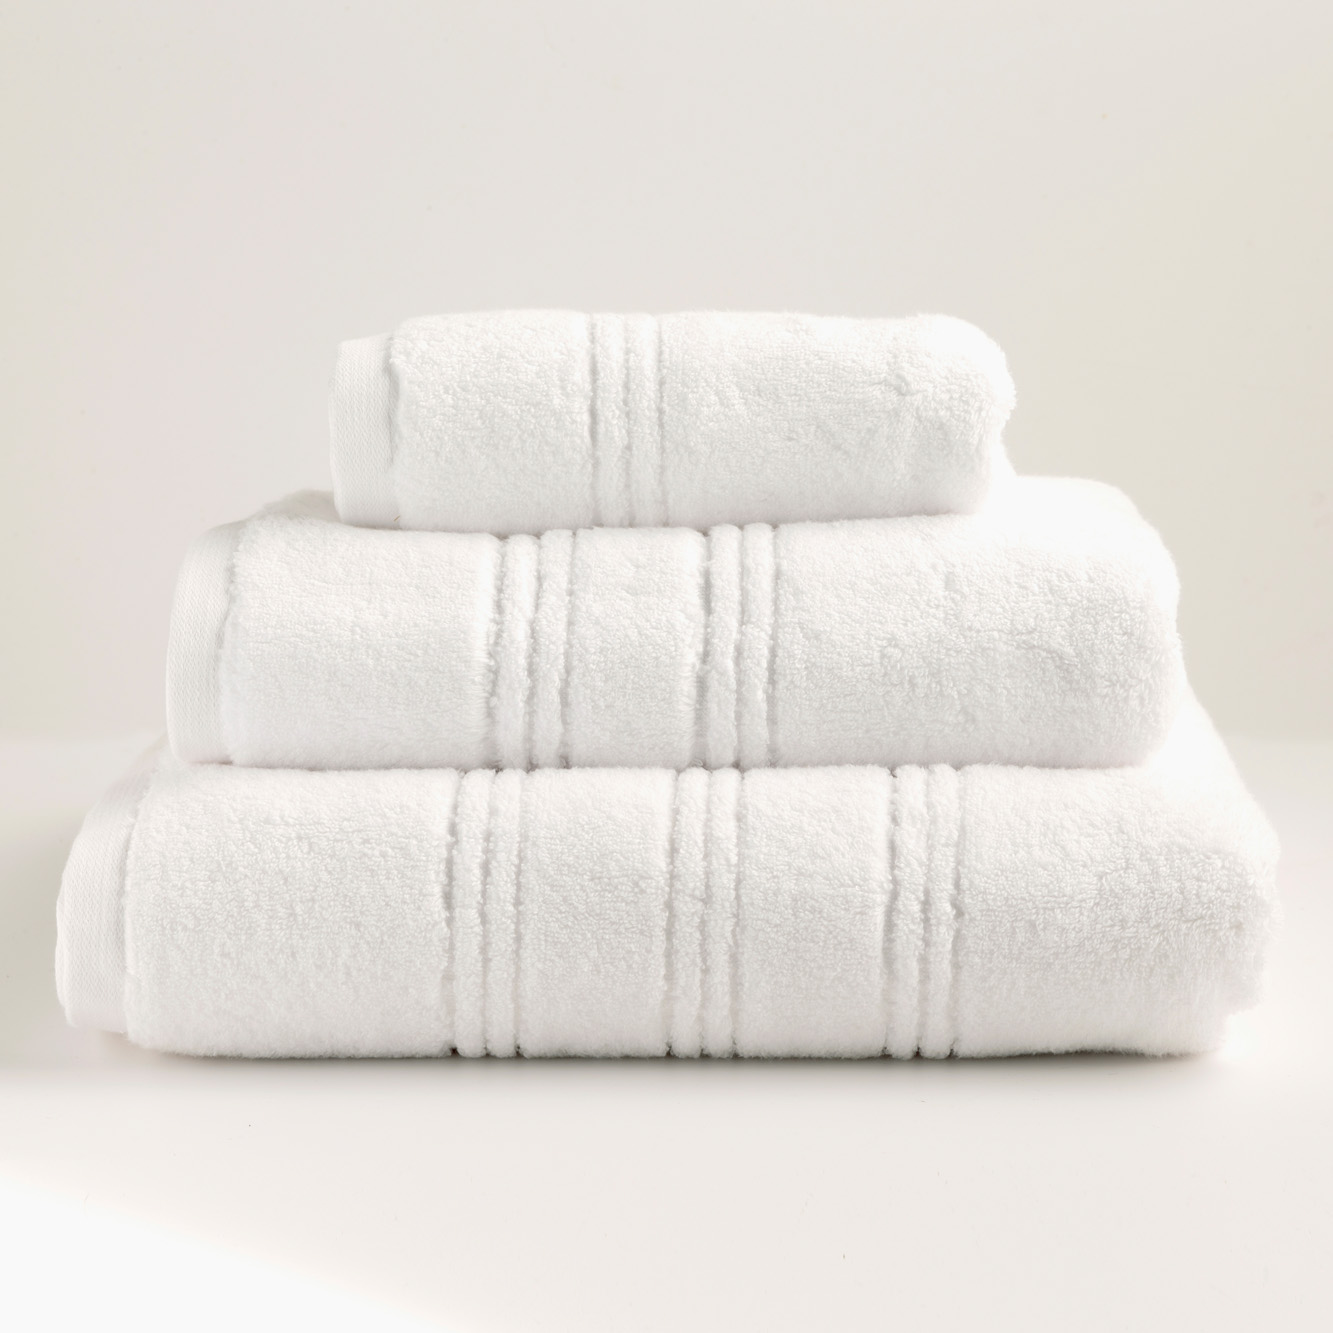 paris-600-gsm-towel-zero-twist-cotton-in-white-mediterranean-linens